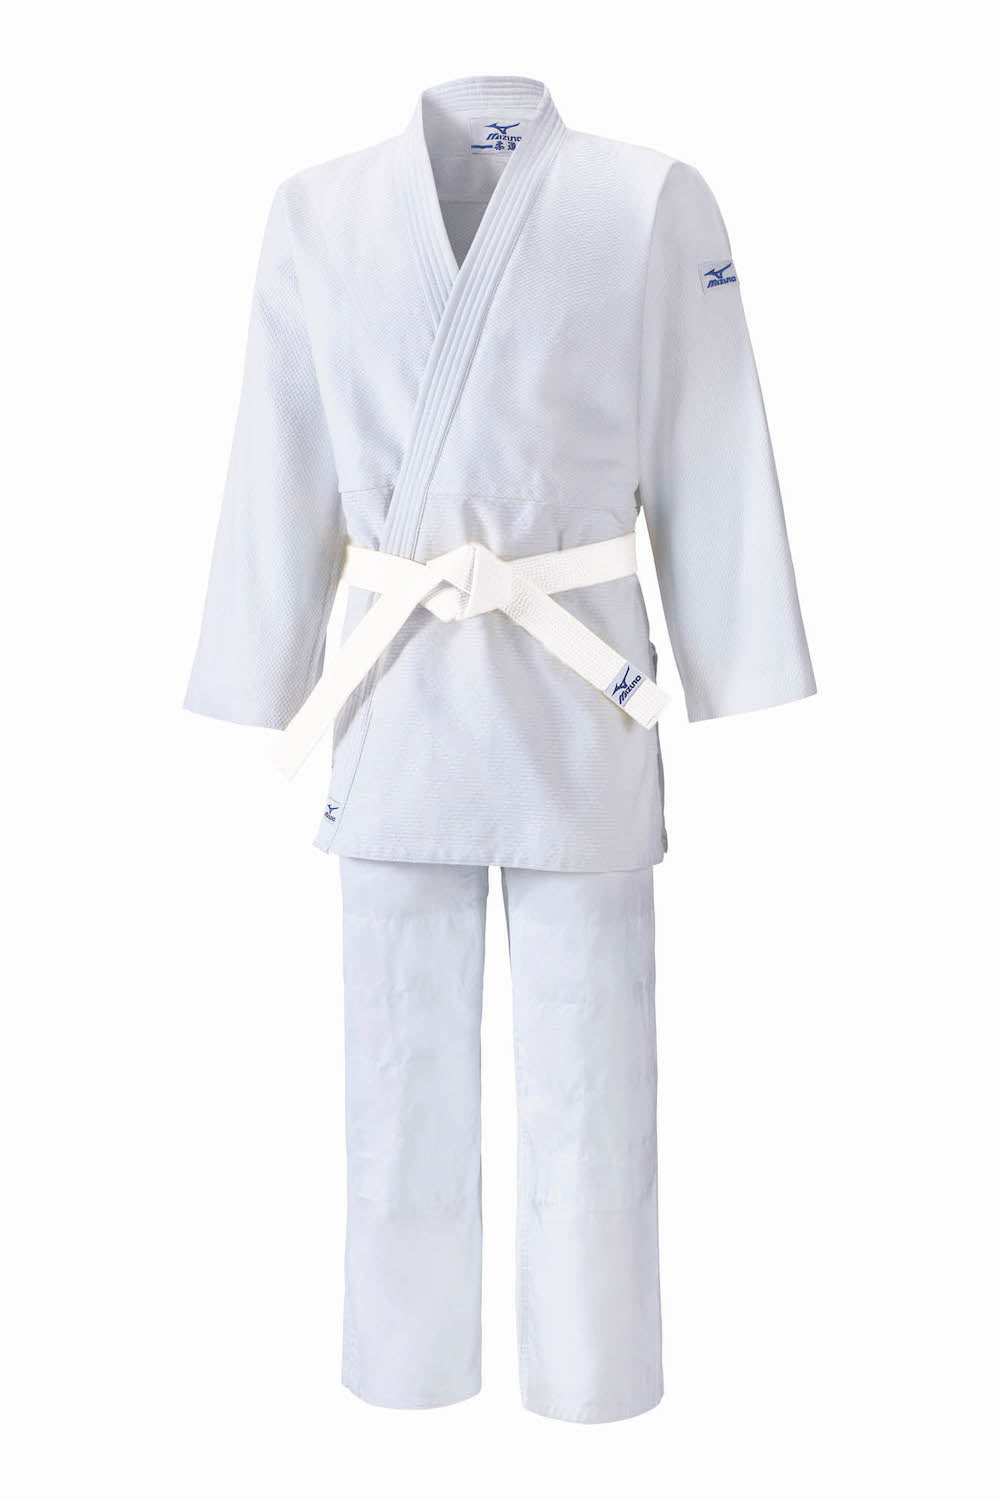 Judogi Kimono de judo Mizuno Kodomo